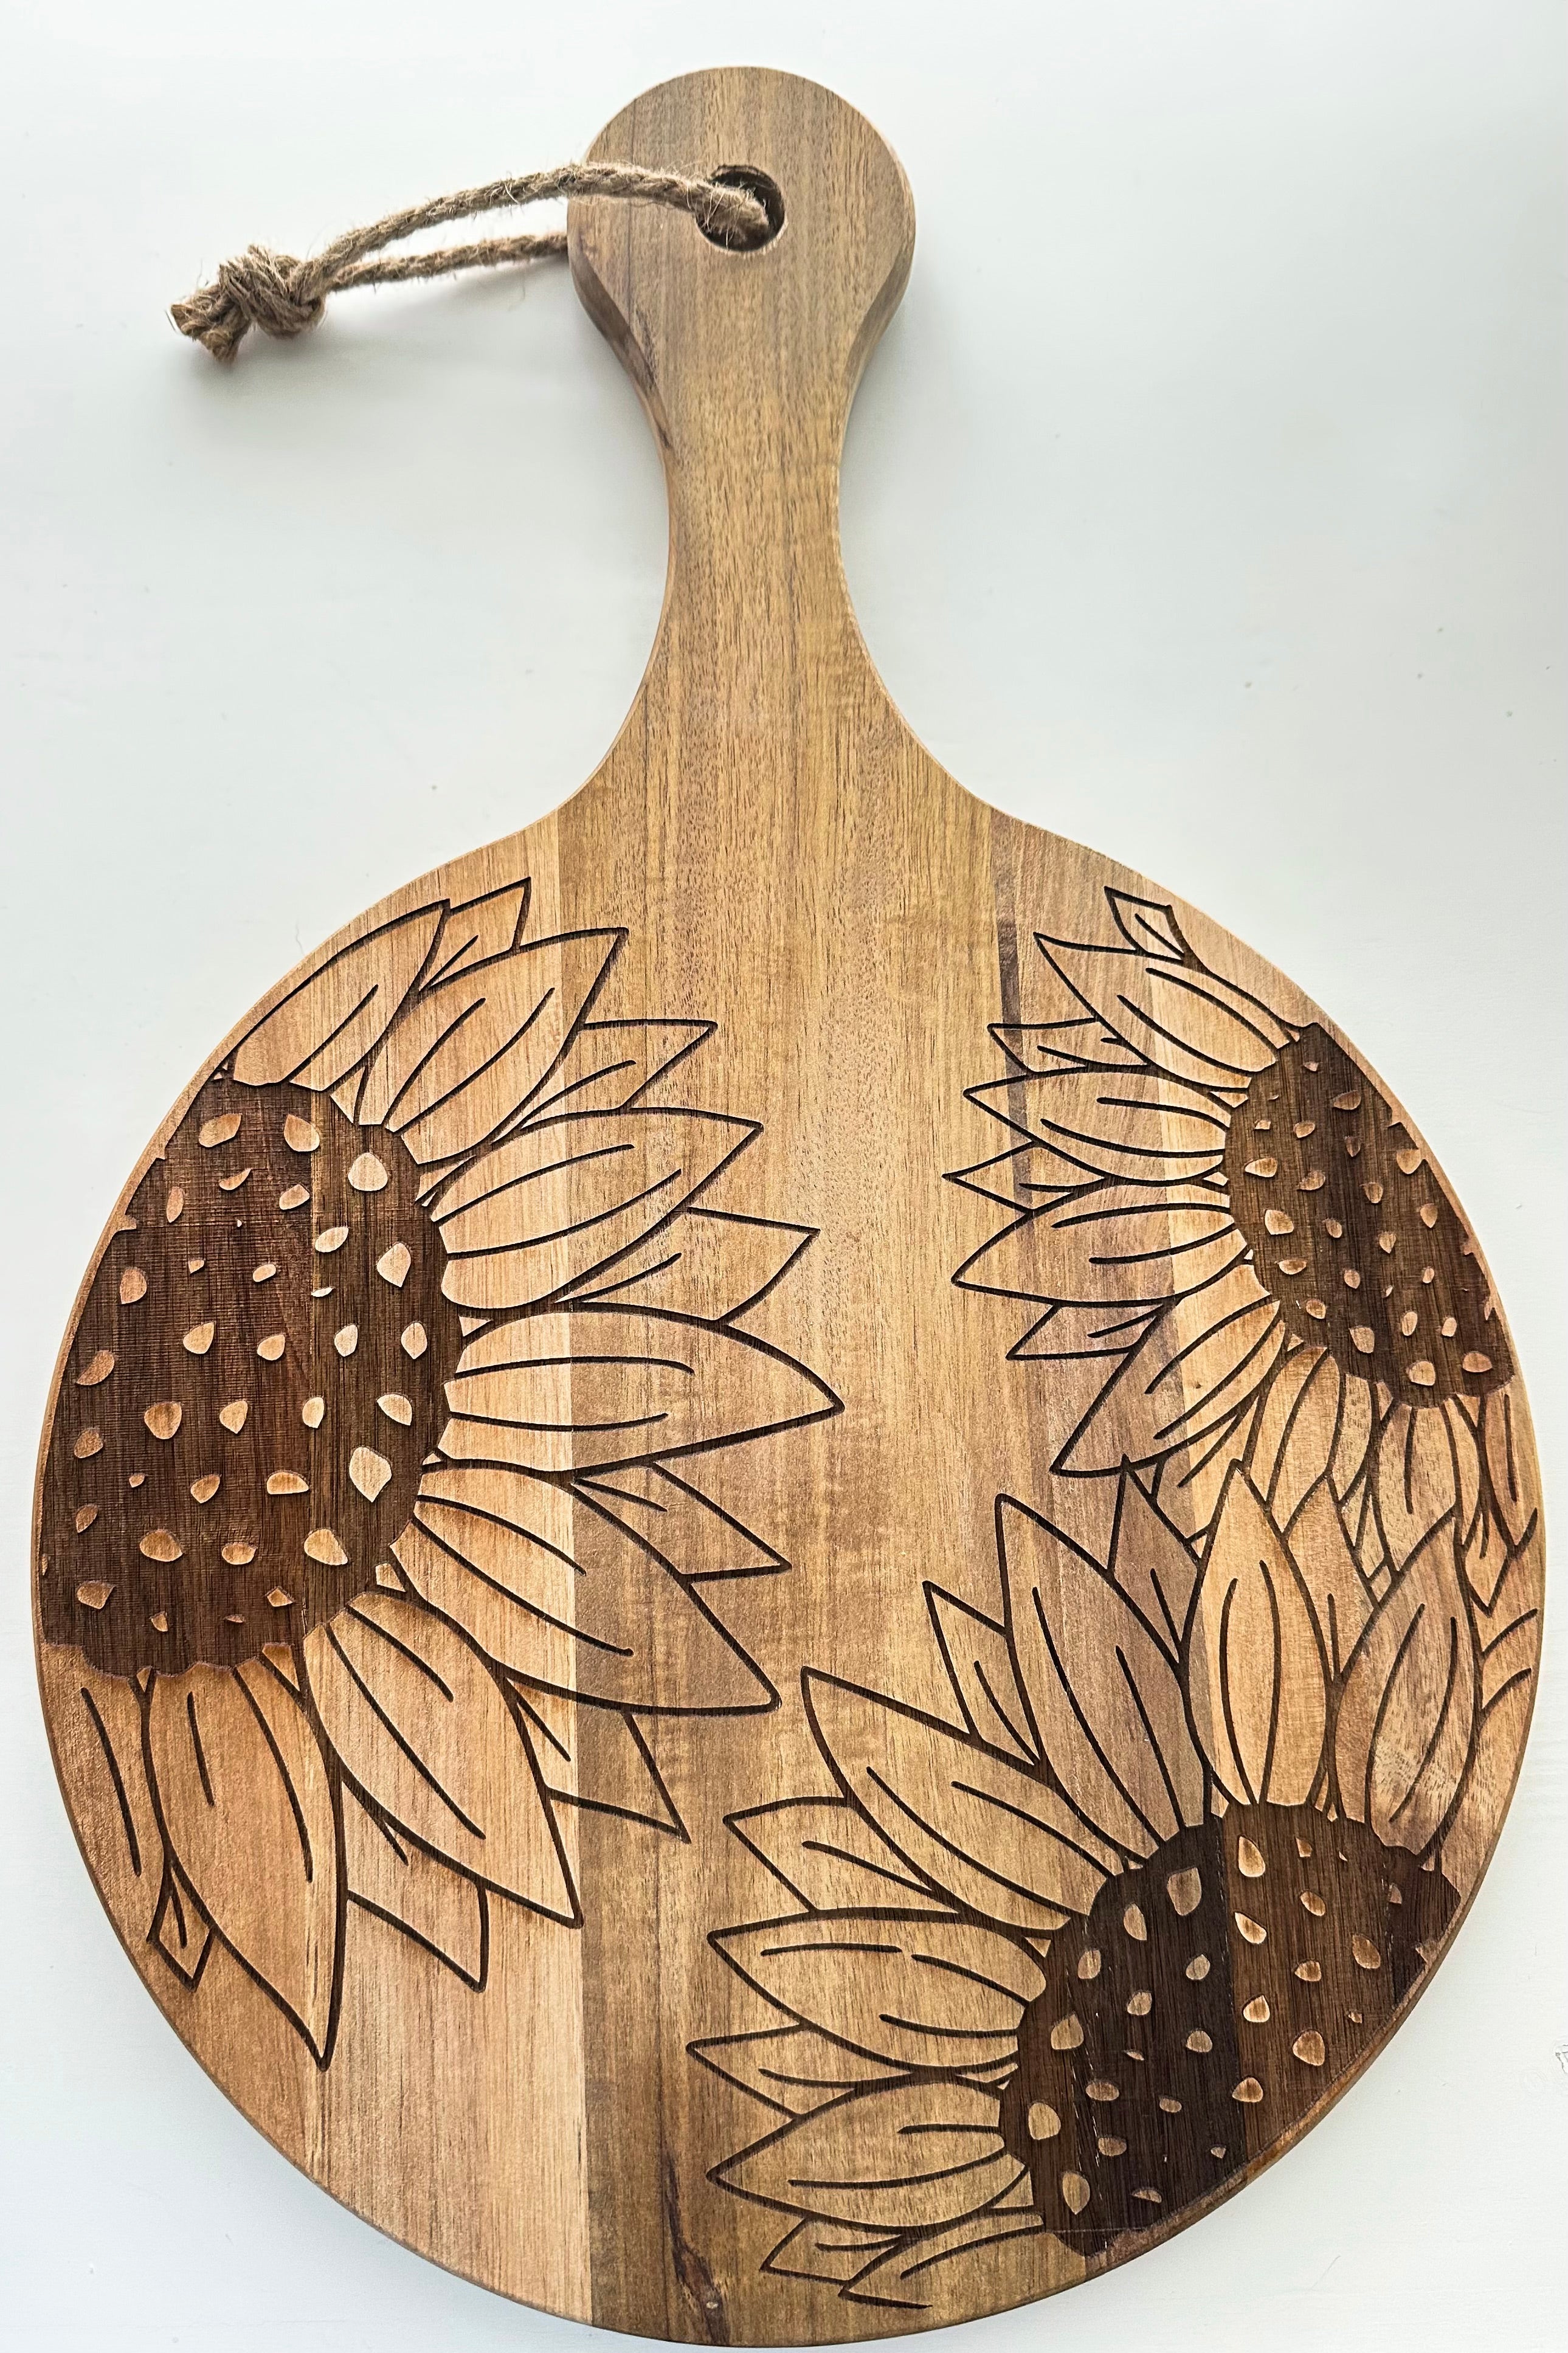 Sunflower Cutting Board